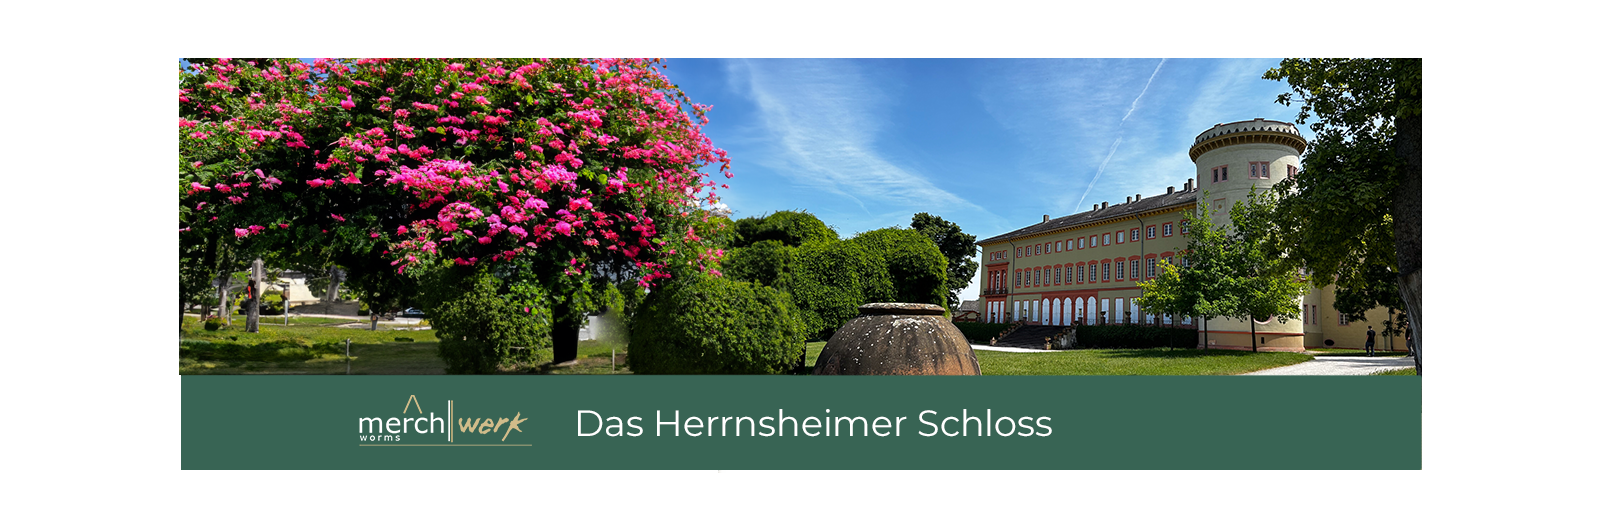 Das Herrnsheimer Schloss